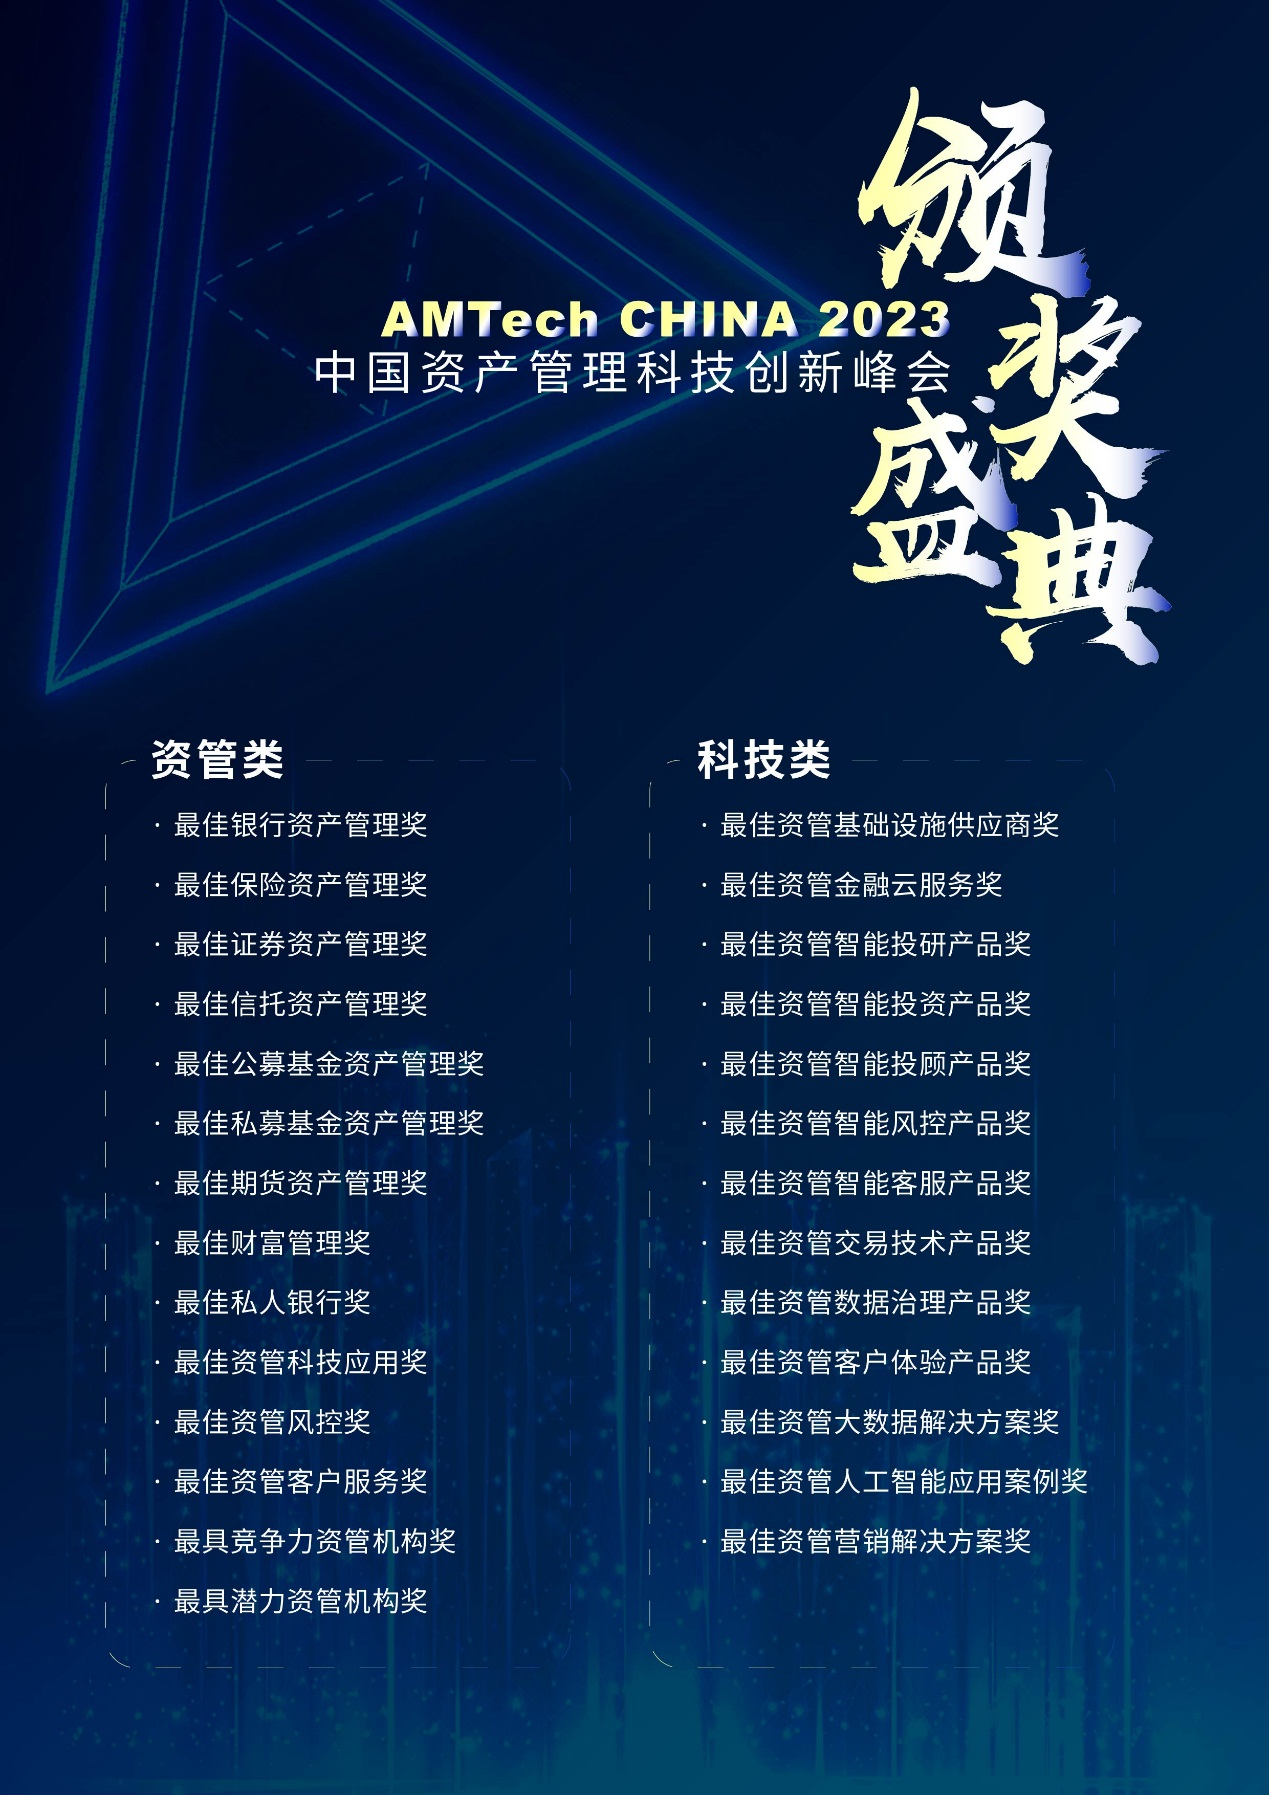 中国资产管理科技创新峰会AMTech CHINA 2023将于2023年4月13日-14日上海举办！